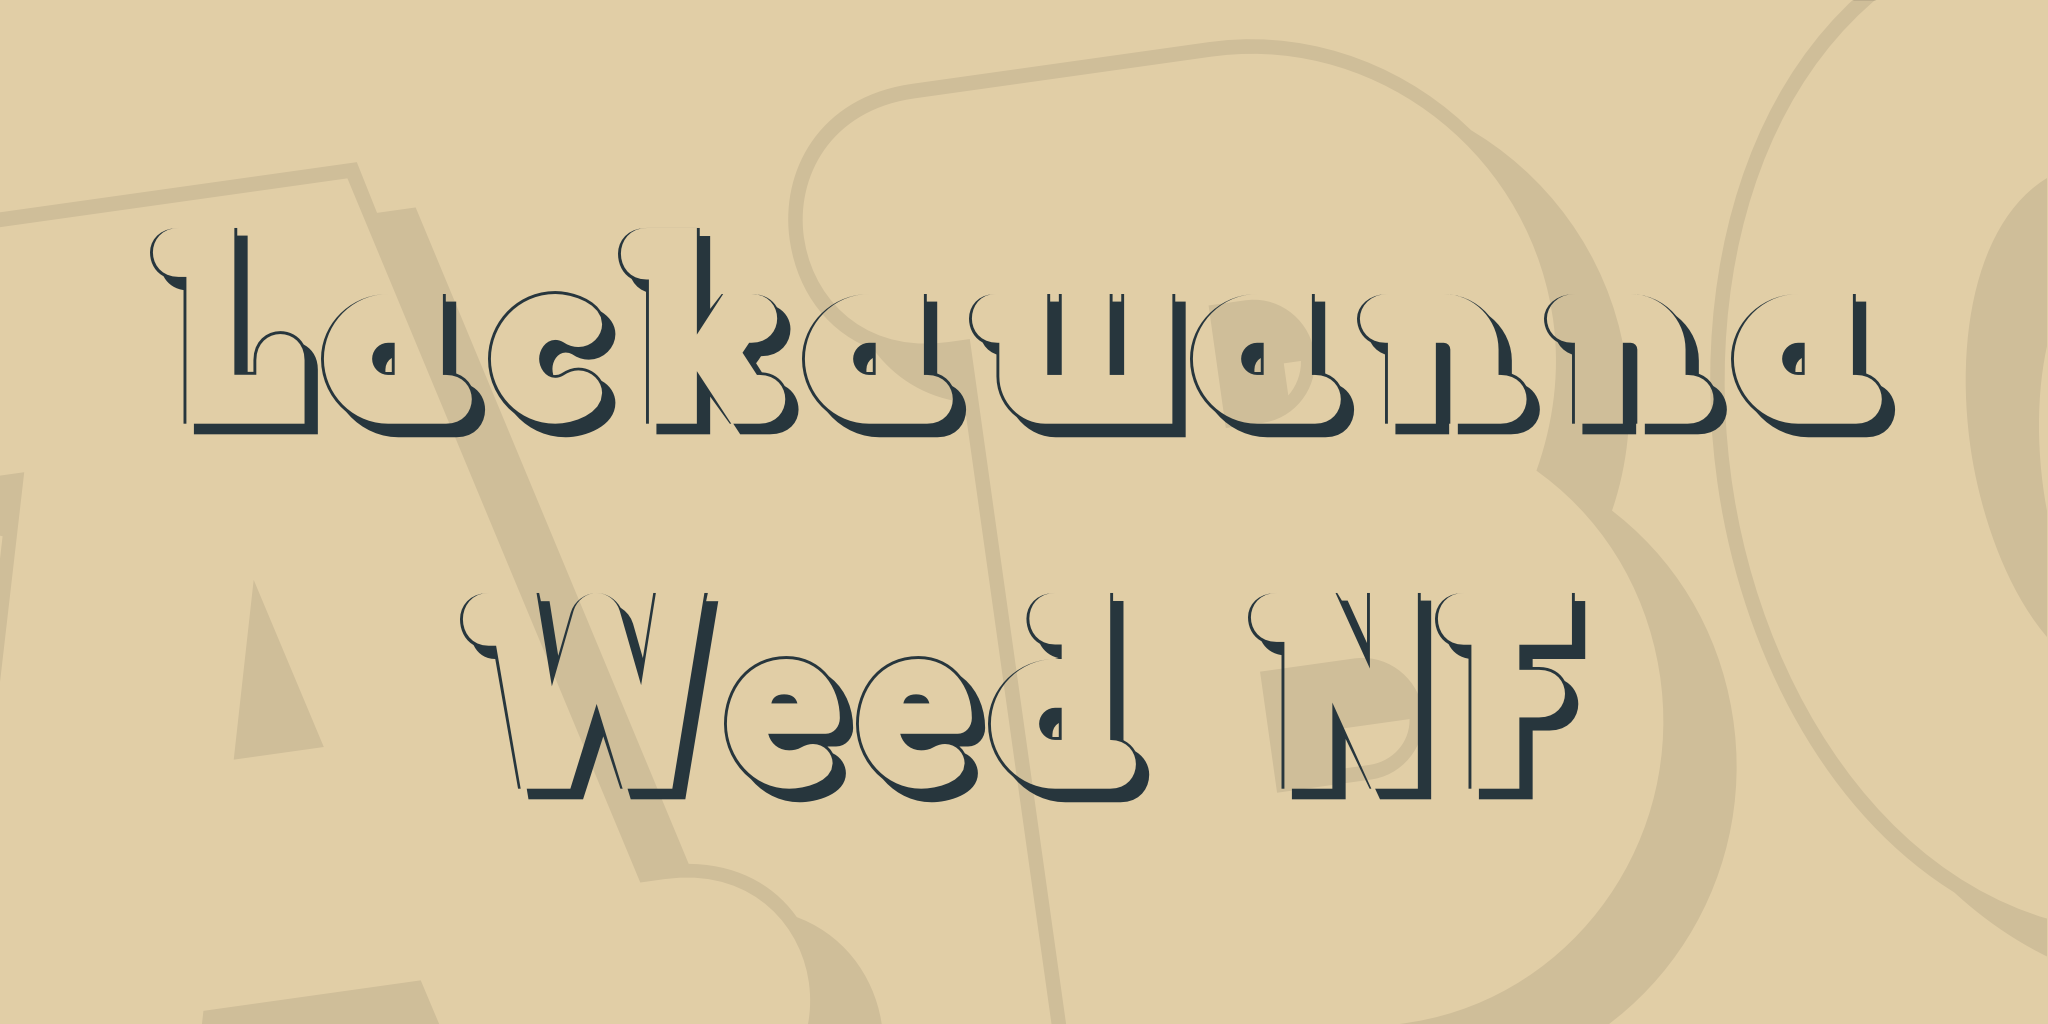 Lackawanna Weed Nf